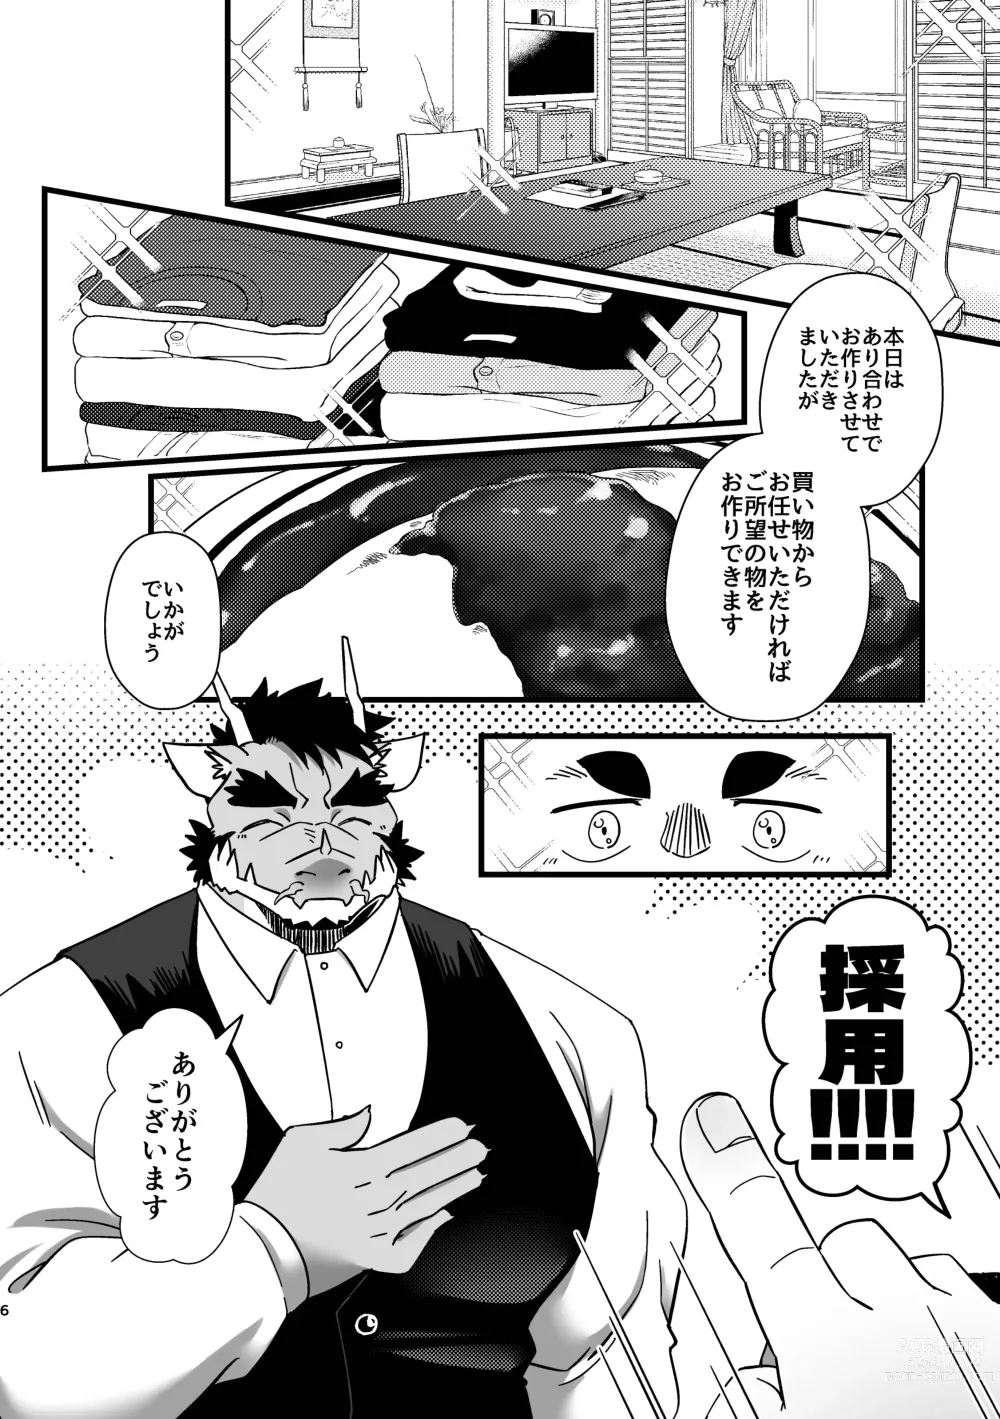 Page 6 of doujinshi Goshujin-sama no Bariuke Hentai Dragon Shitsuji desukara